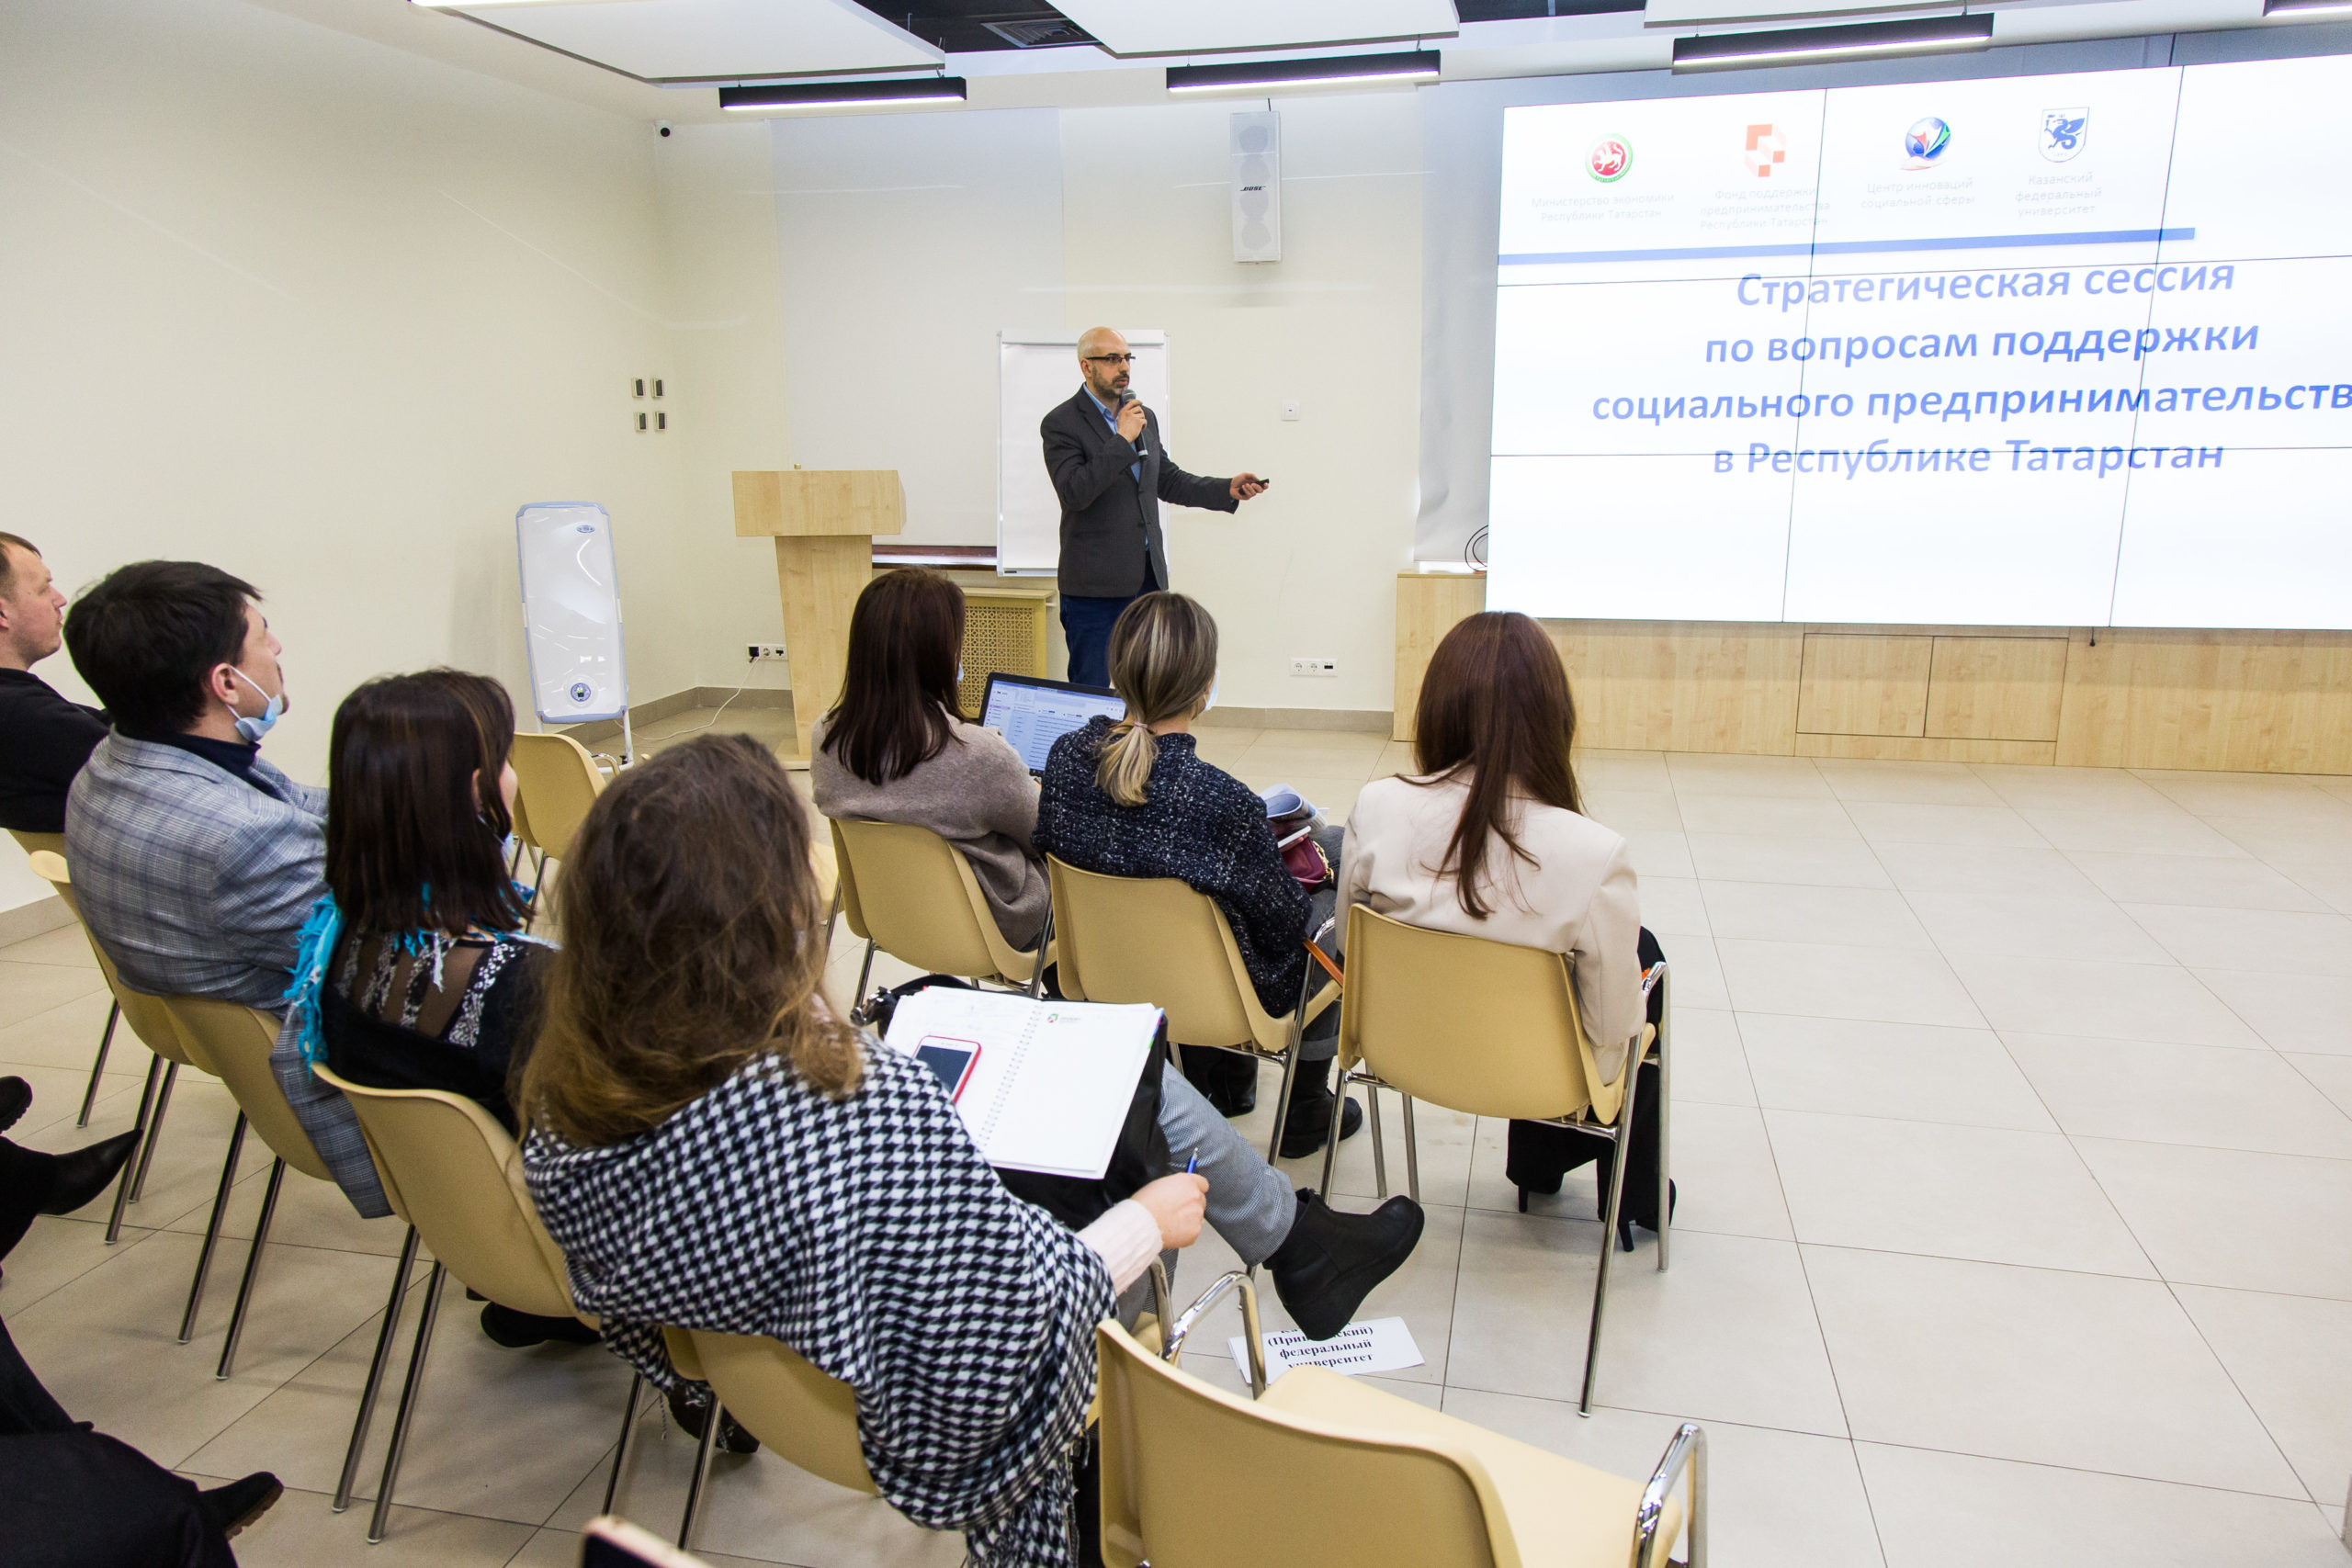 В Республике Татарстан стартует серия бесплатных обучающих семинаров для социальных предпринимателей в 9 городах республики